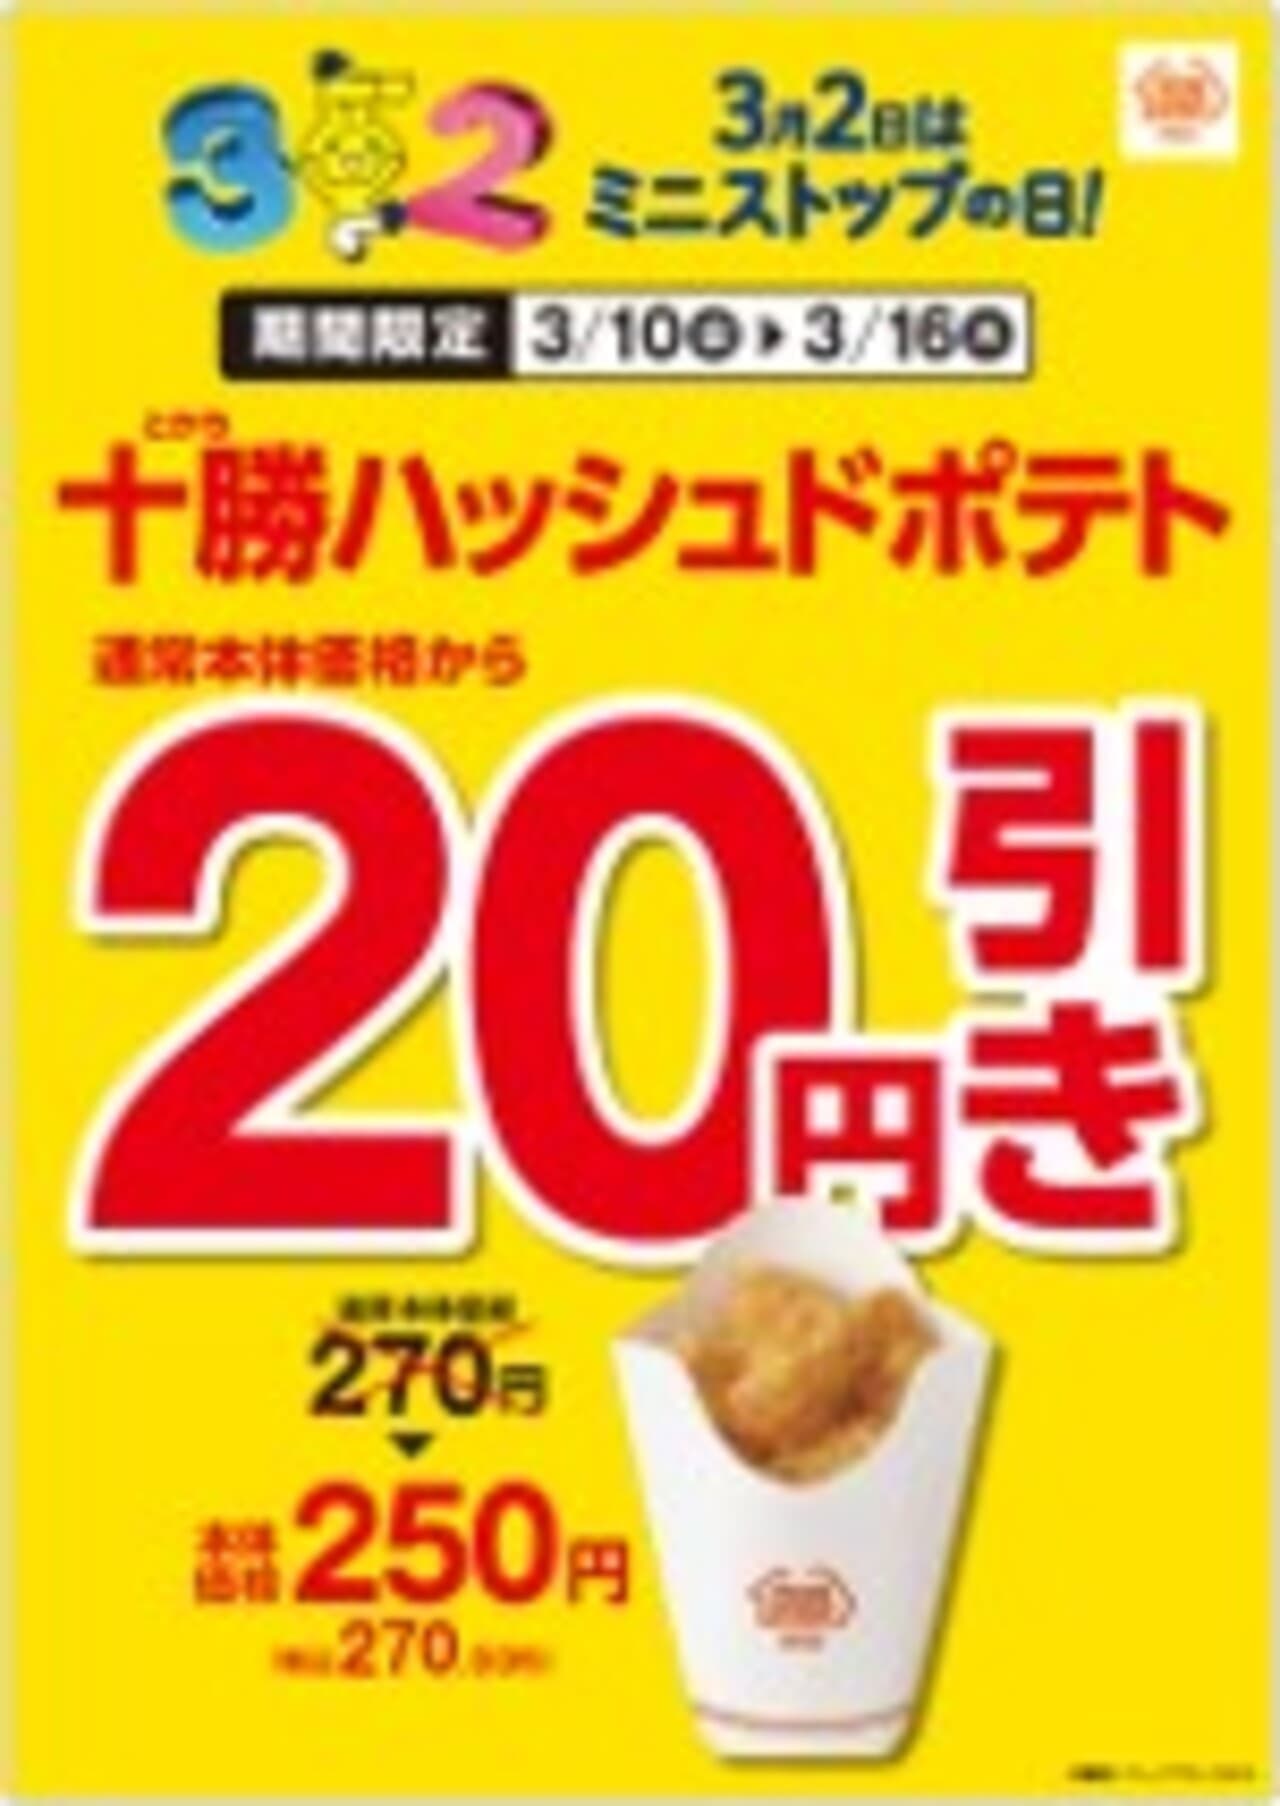 ミニストップ「十勝ハッシュドポテト20円引き」